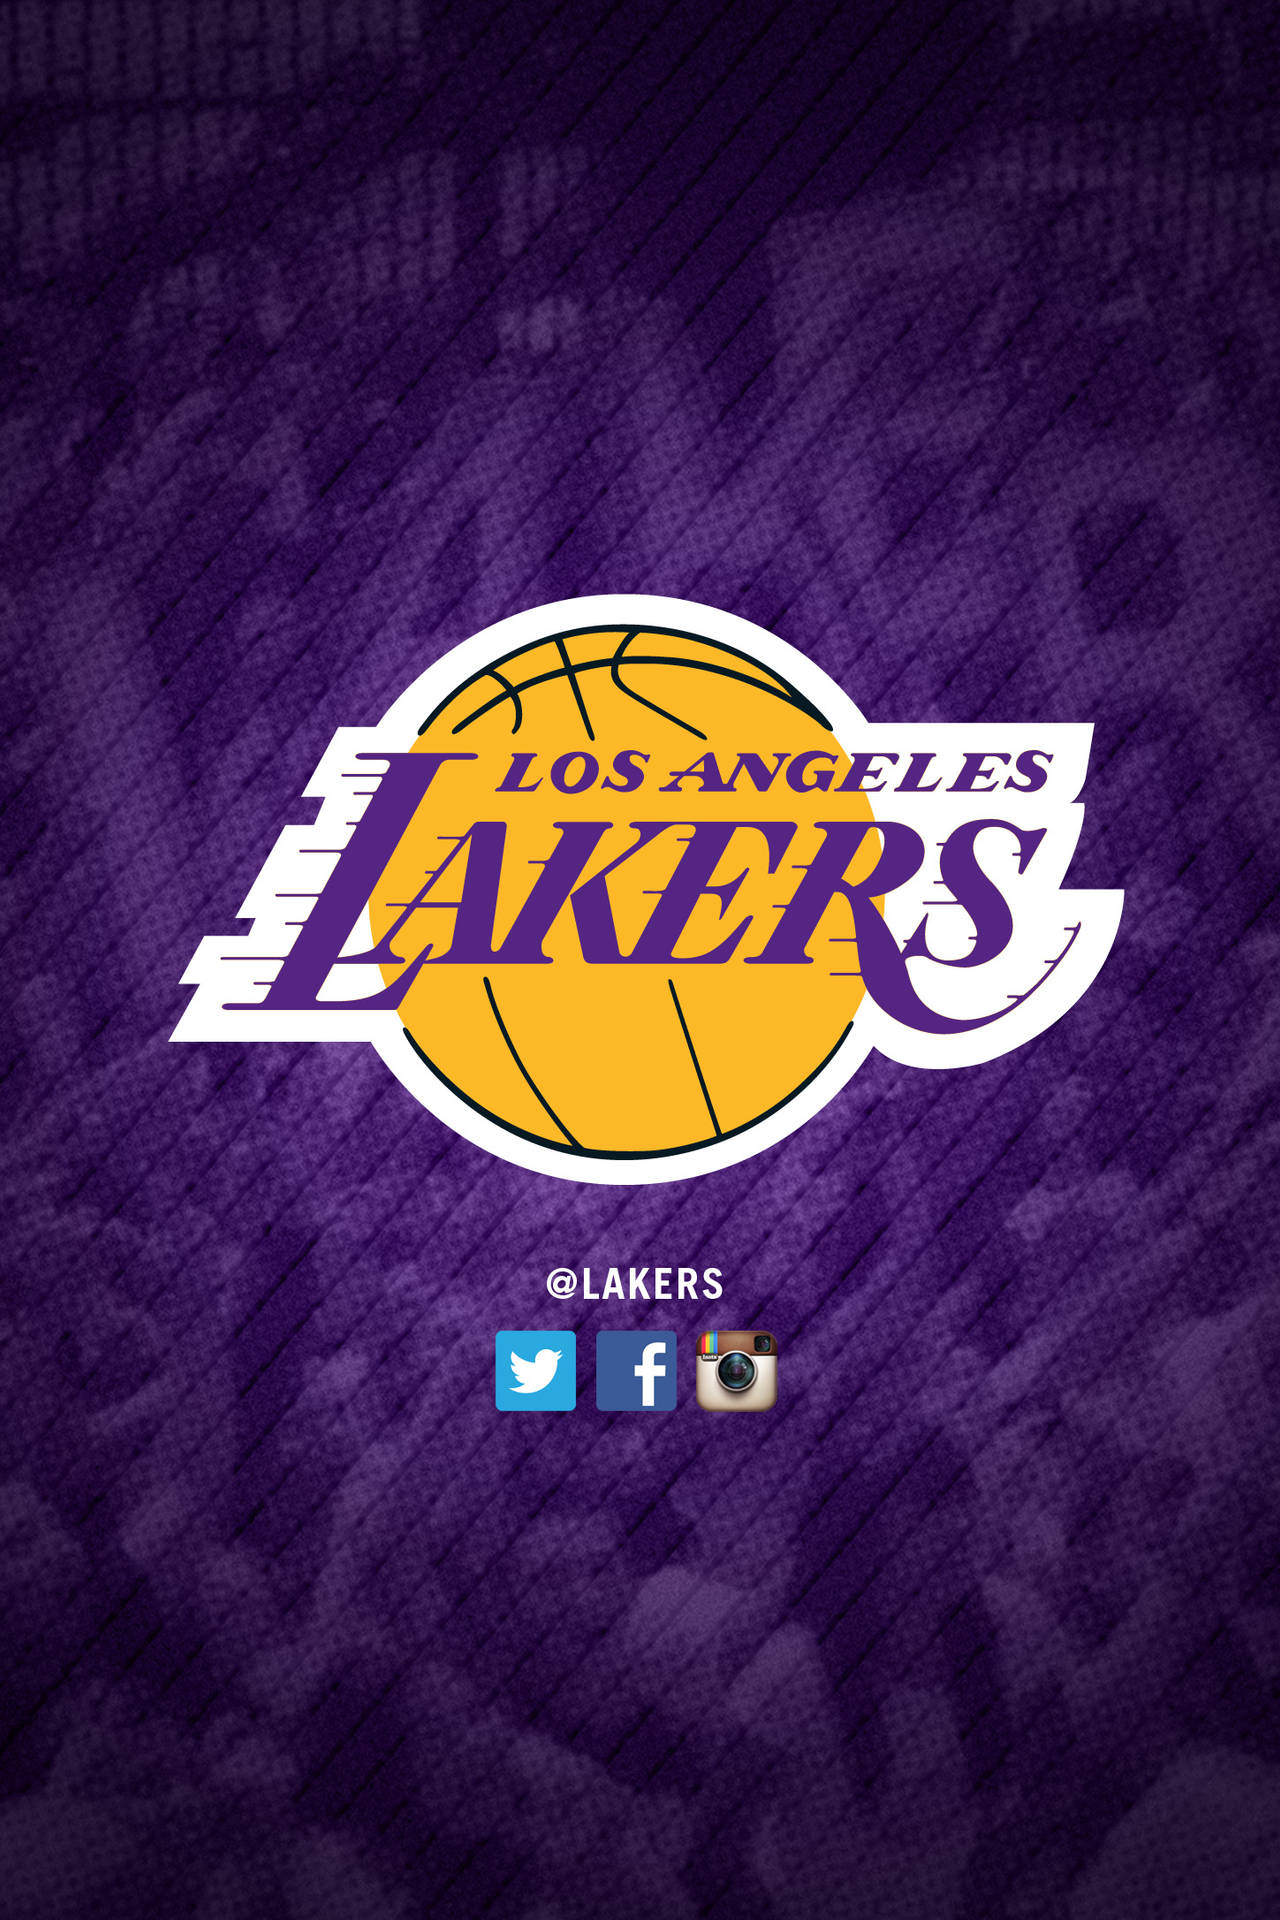 Muestratu Orgullo Por Los Lakers Con Un Iphone De Los Lakers. Fondo de pantalla